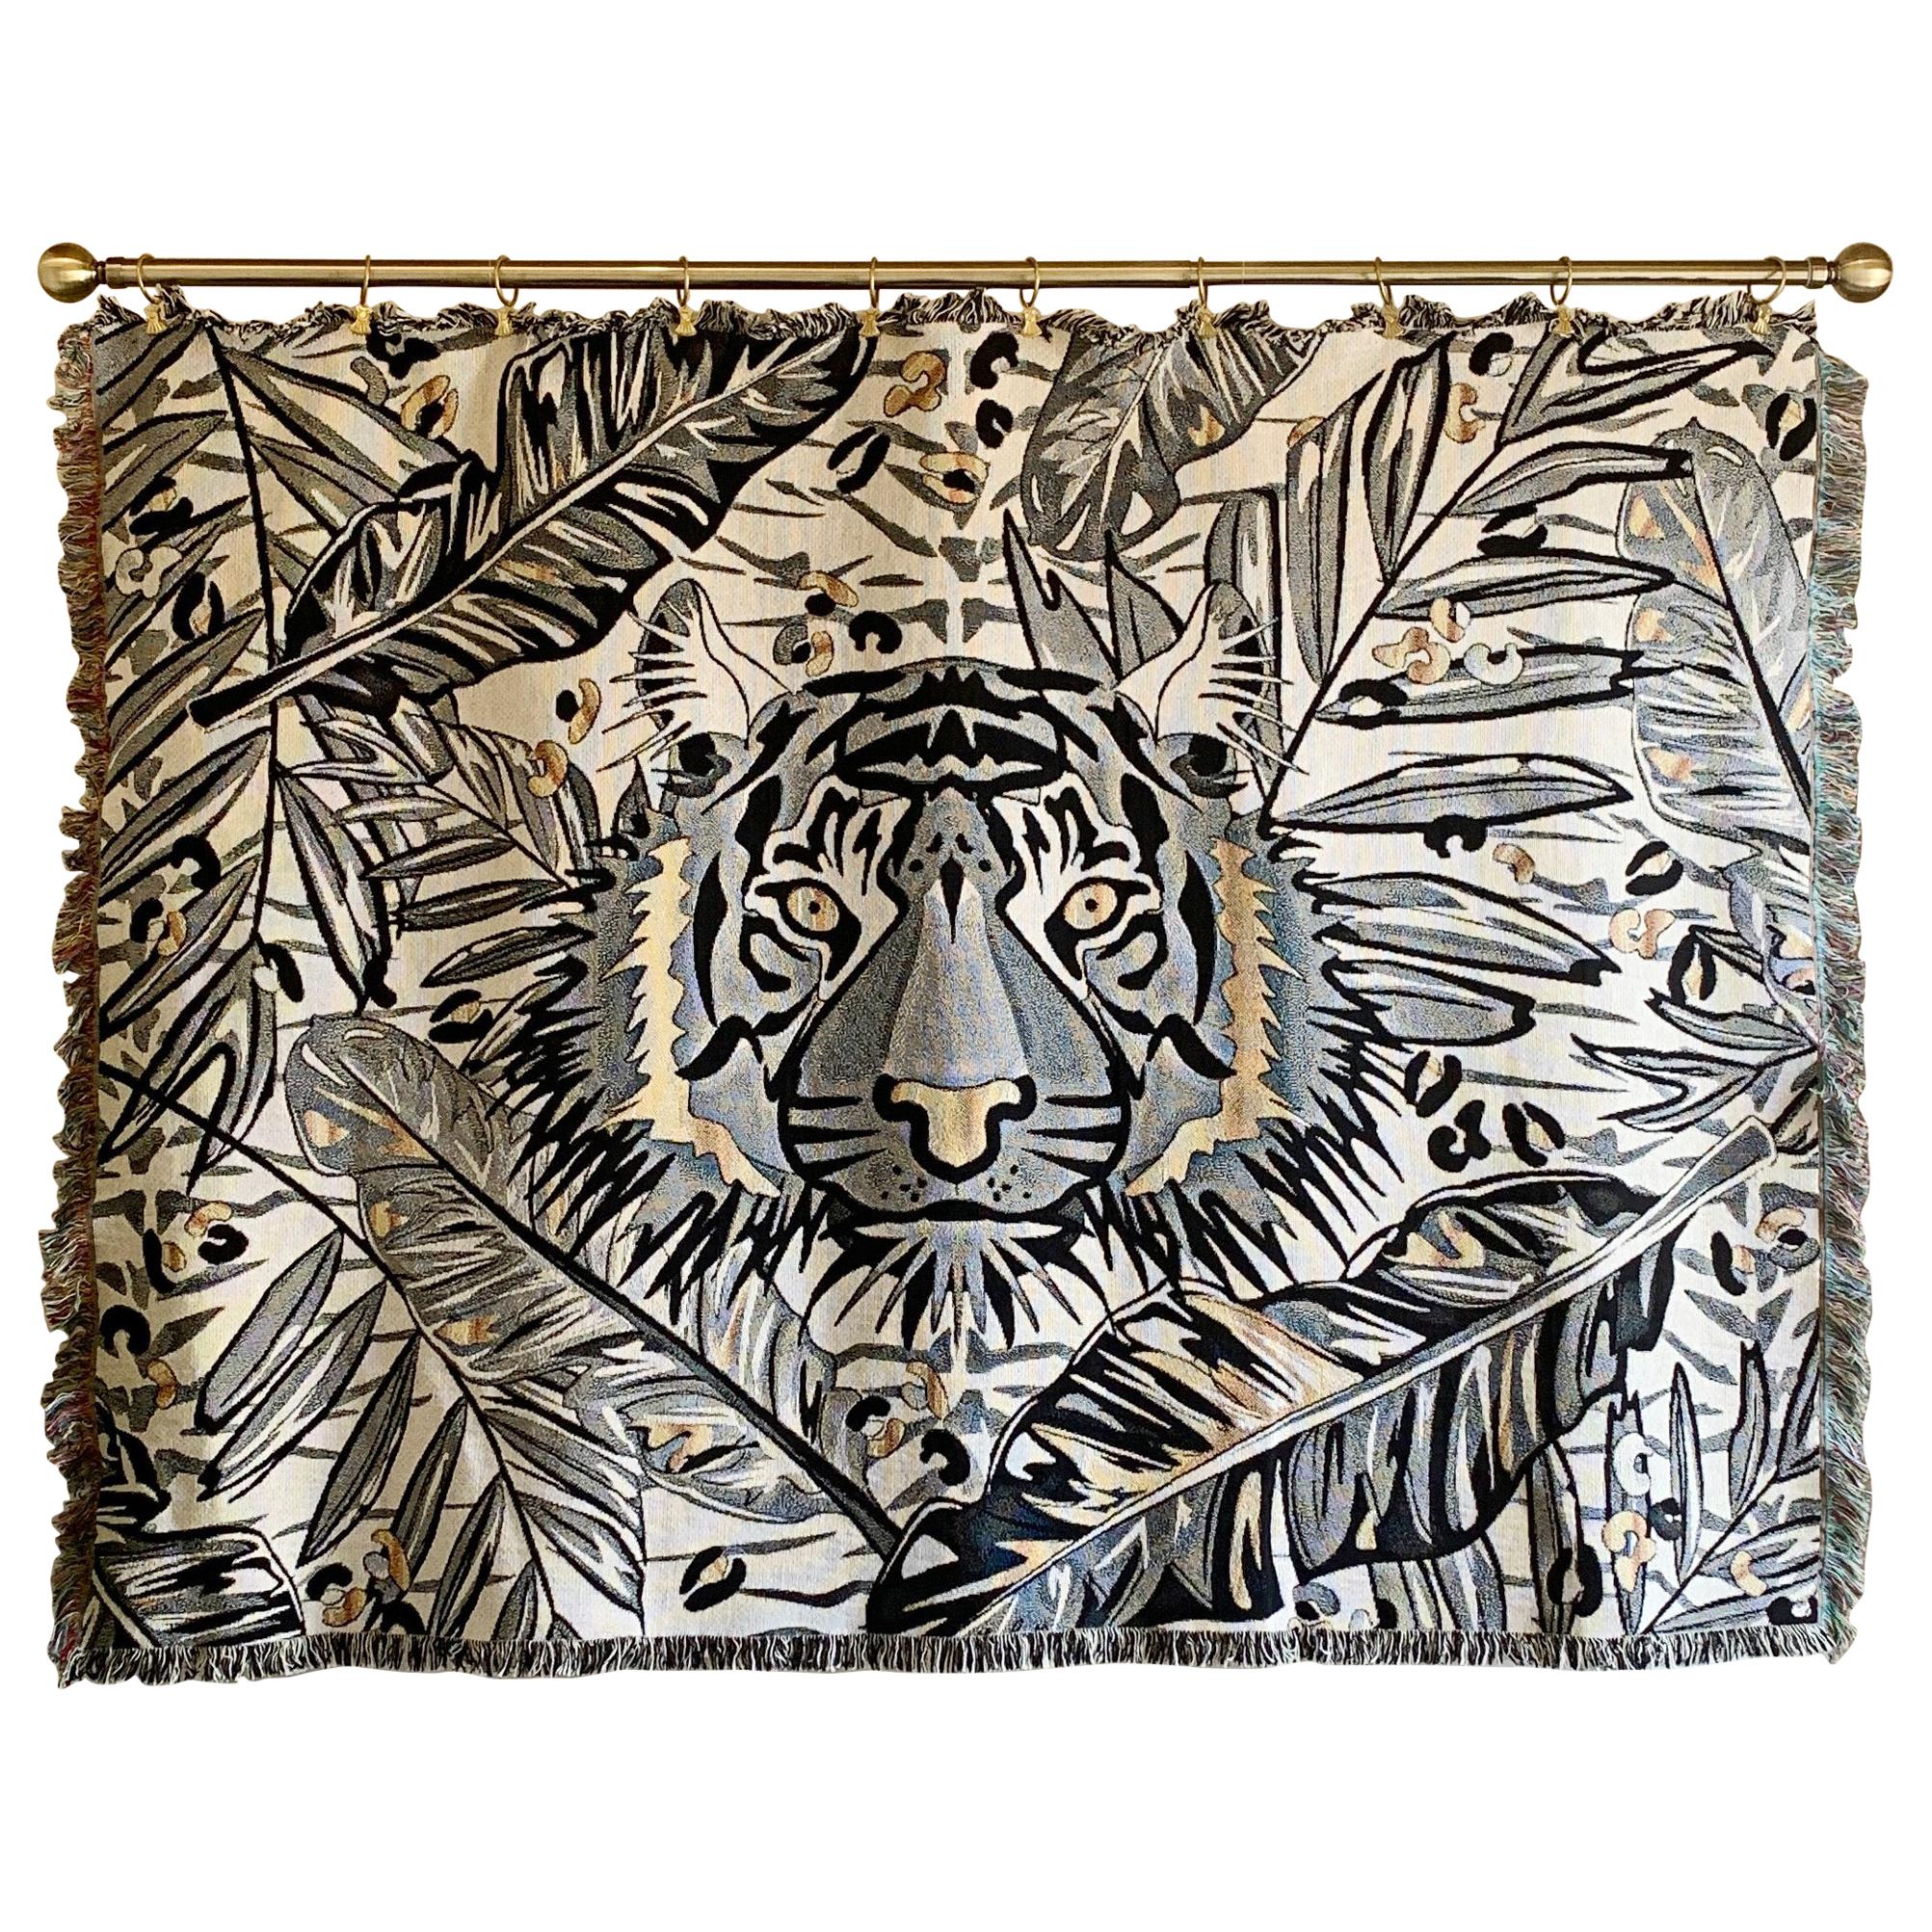 The Tropics Collection 'Tiger' Plaid tissé Monochrome et or